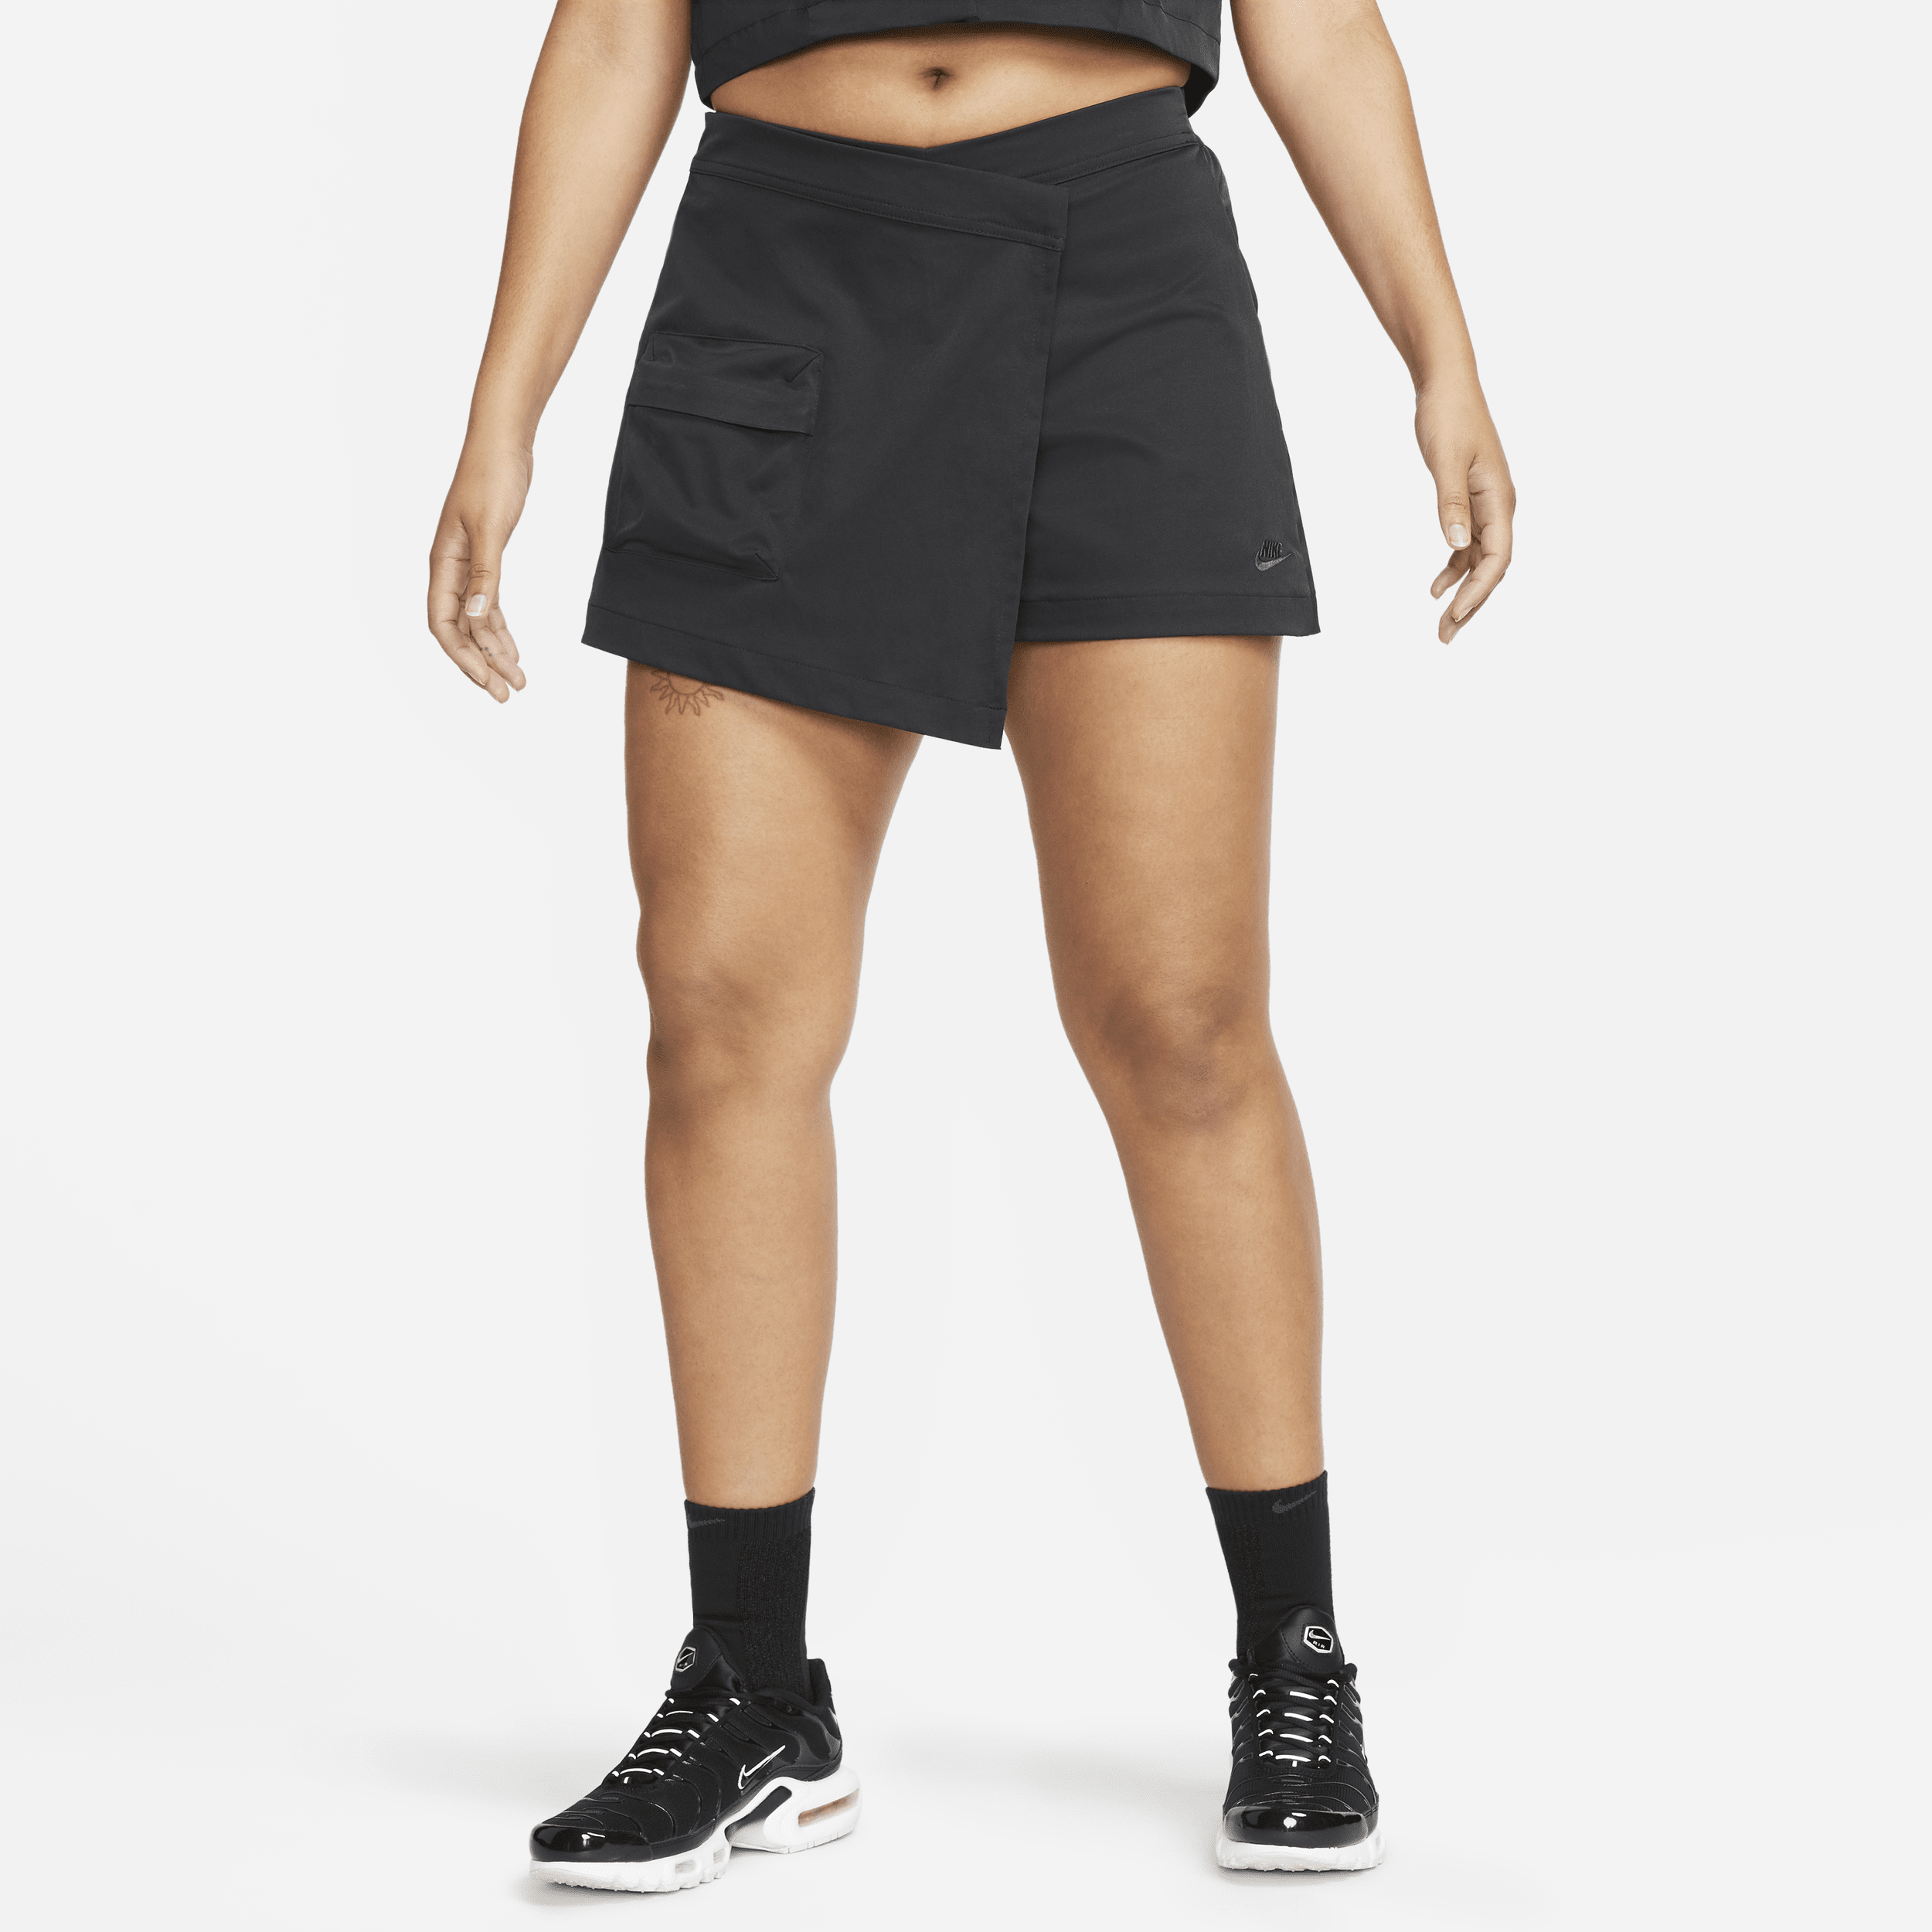 Højtaljet Nike Sportswear Tech Pack-skort til kvinder - sort